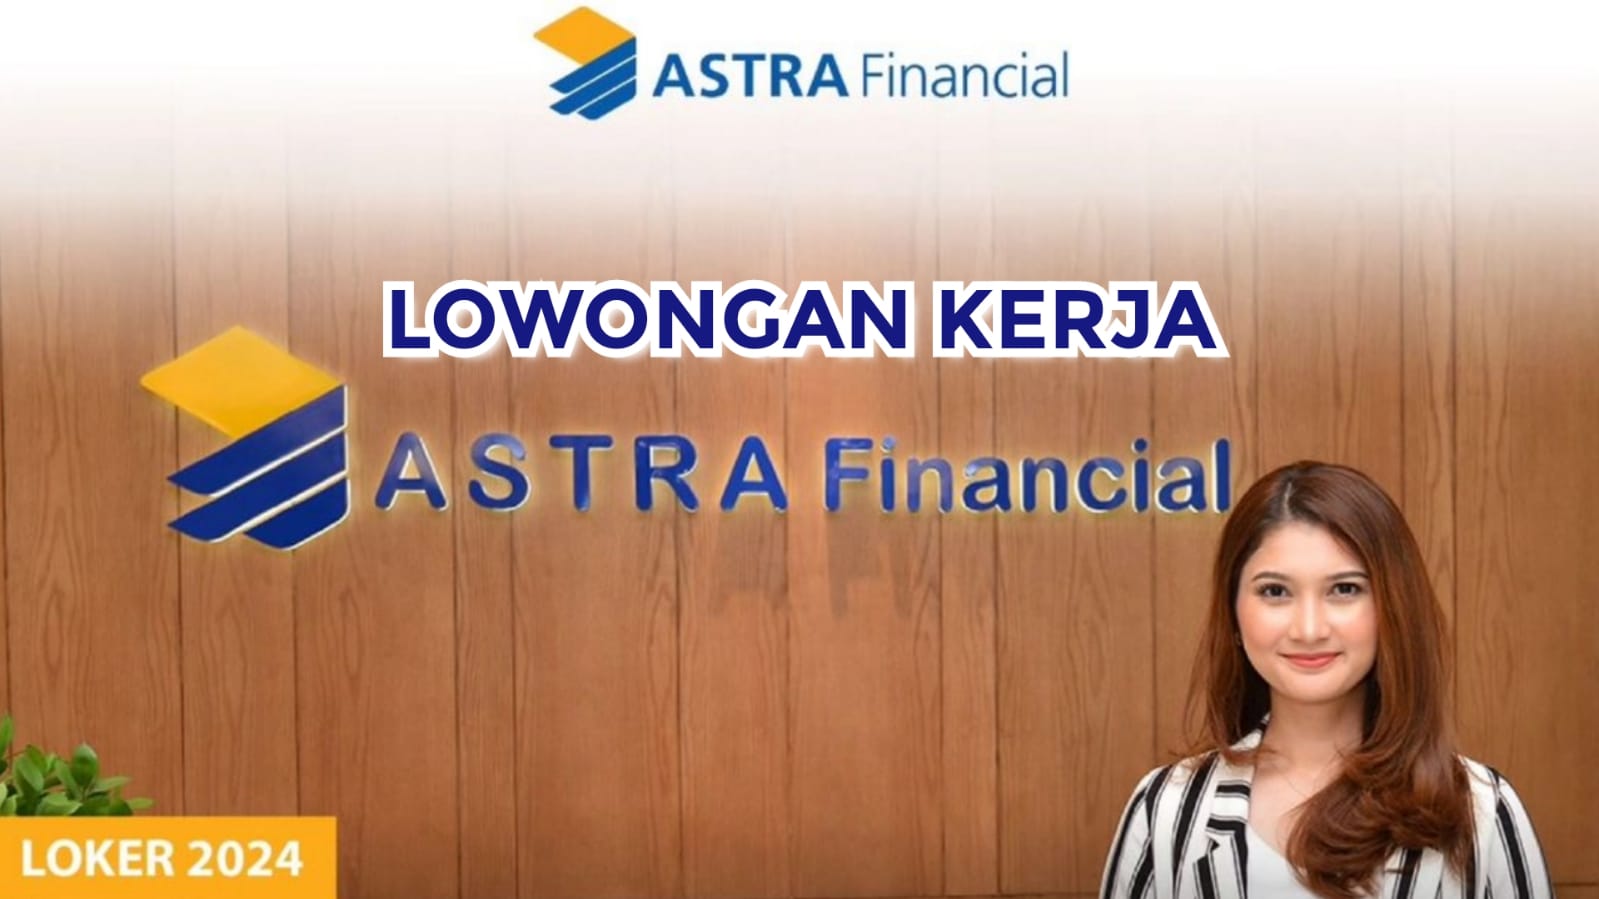 Lowongan Kerja dari Astra Financial: Management Trainee Cek Link Pendaftaran!